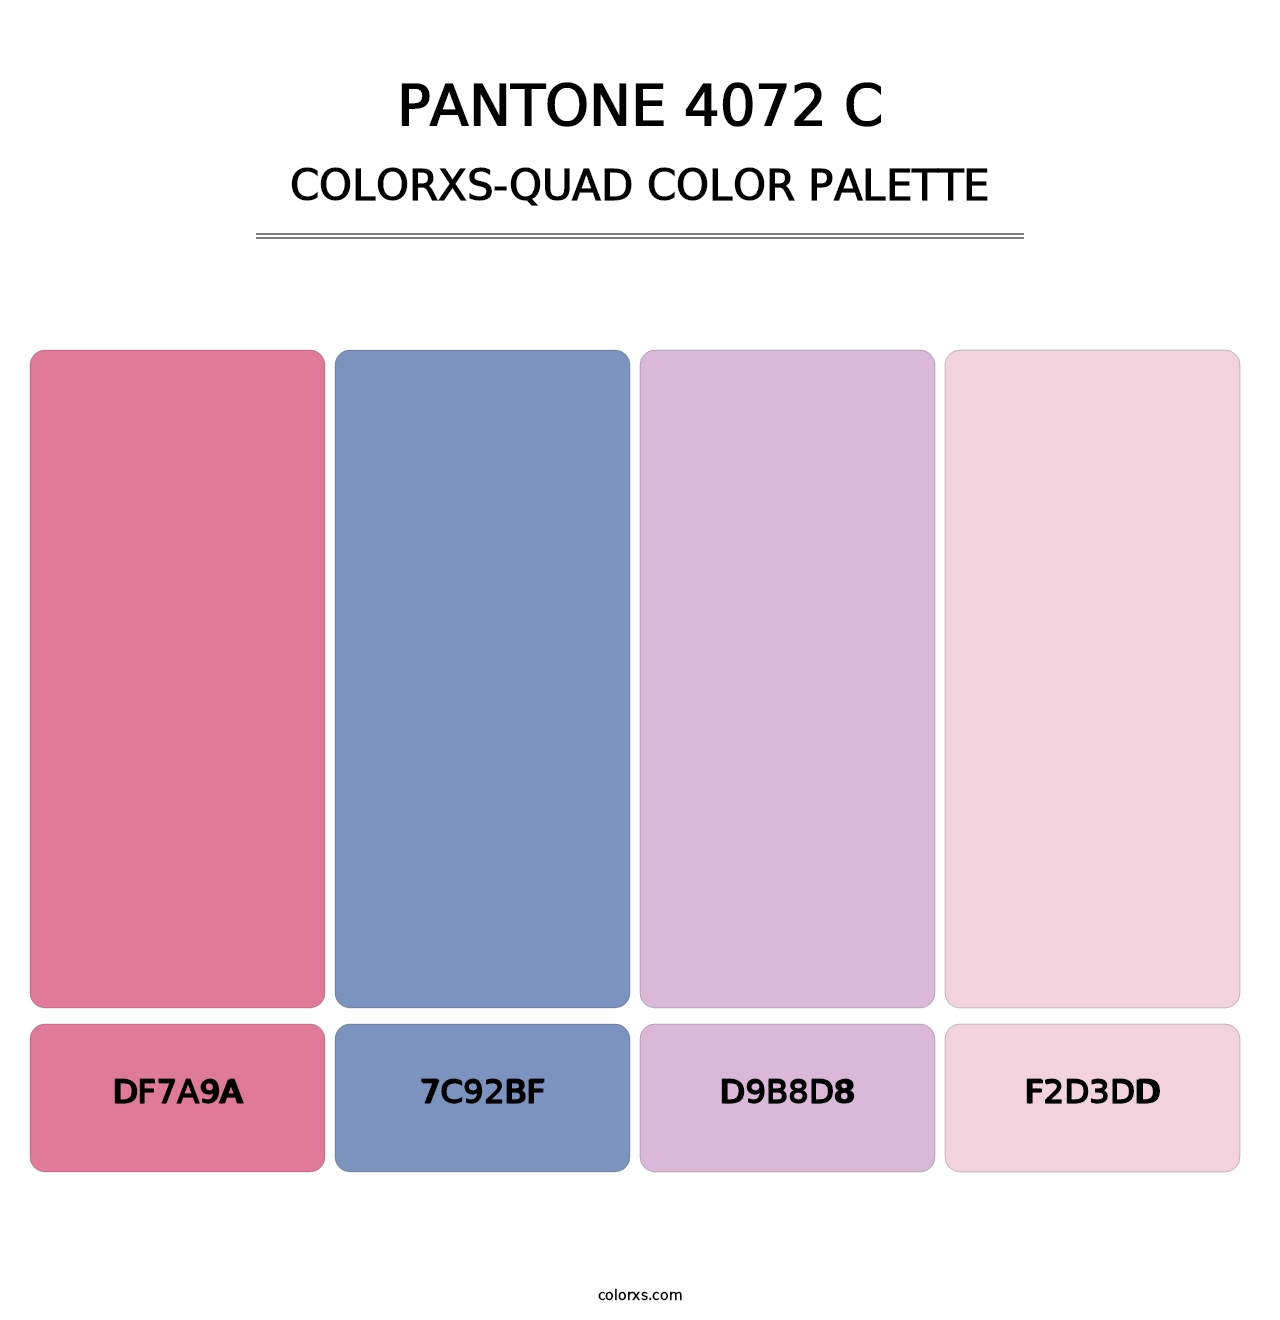 PANTONE 4072 C - Colorxs Quad Palette